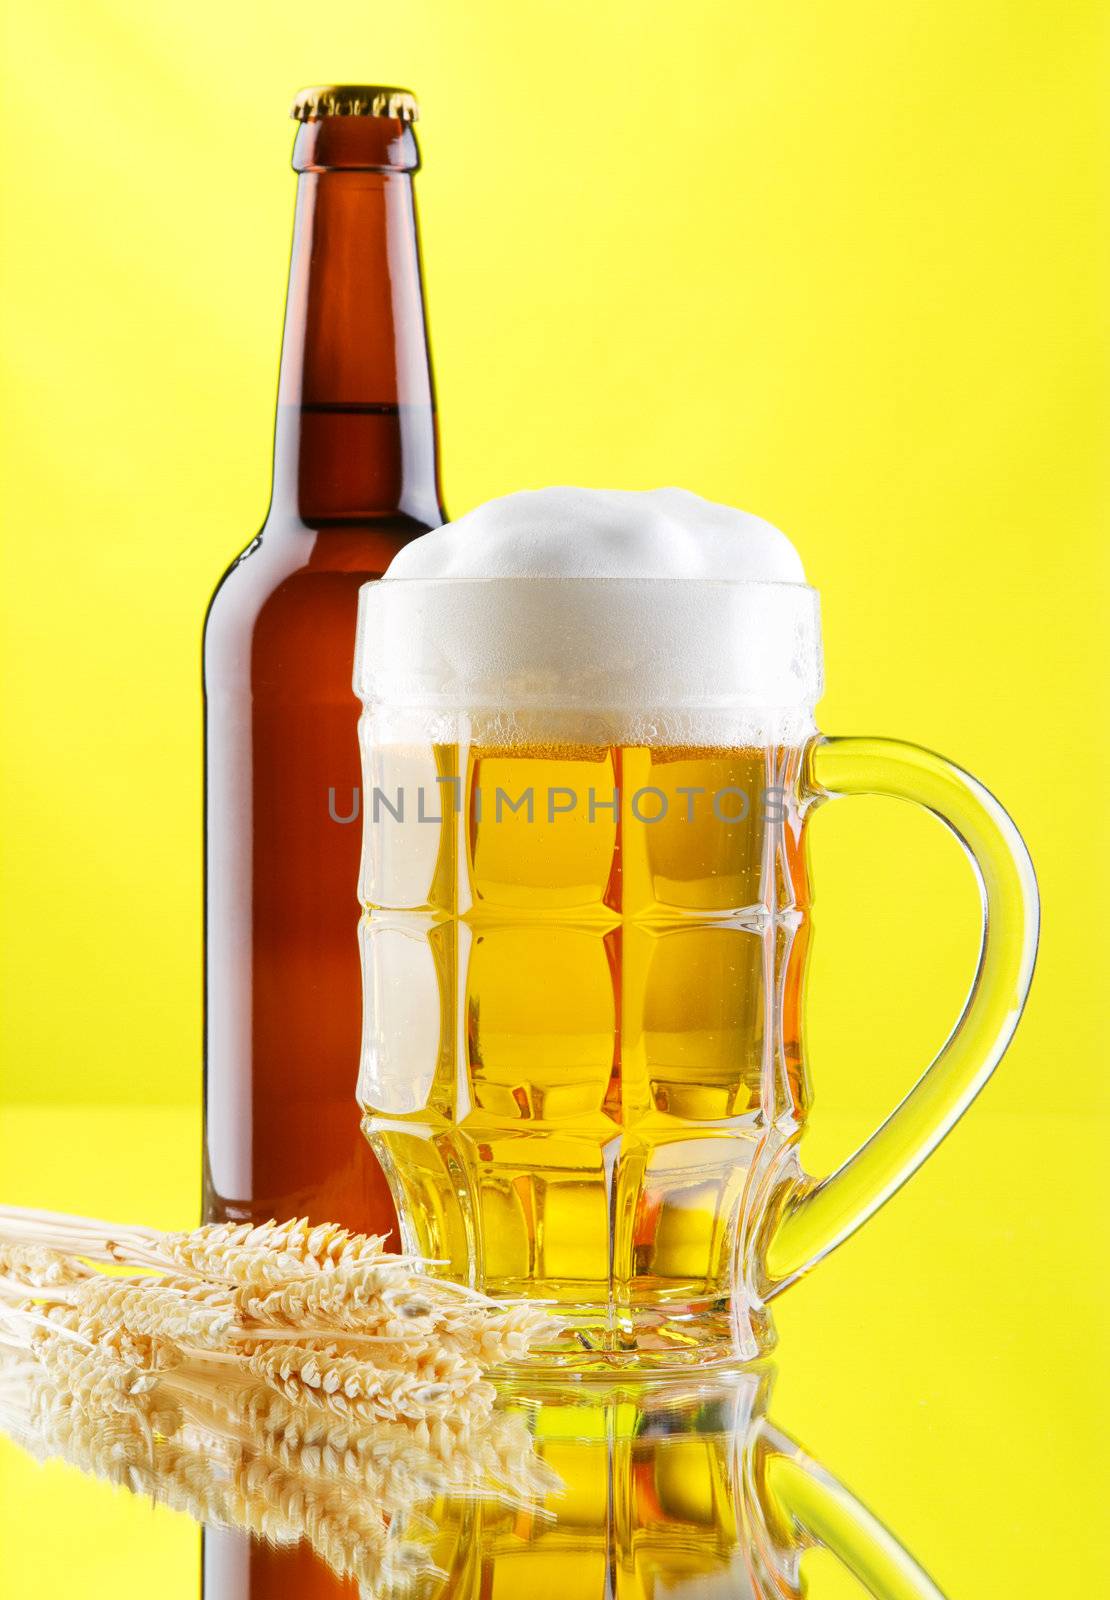 Beer mug and bottles on yellow background, studio photo